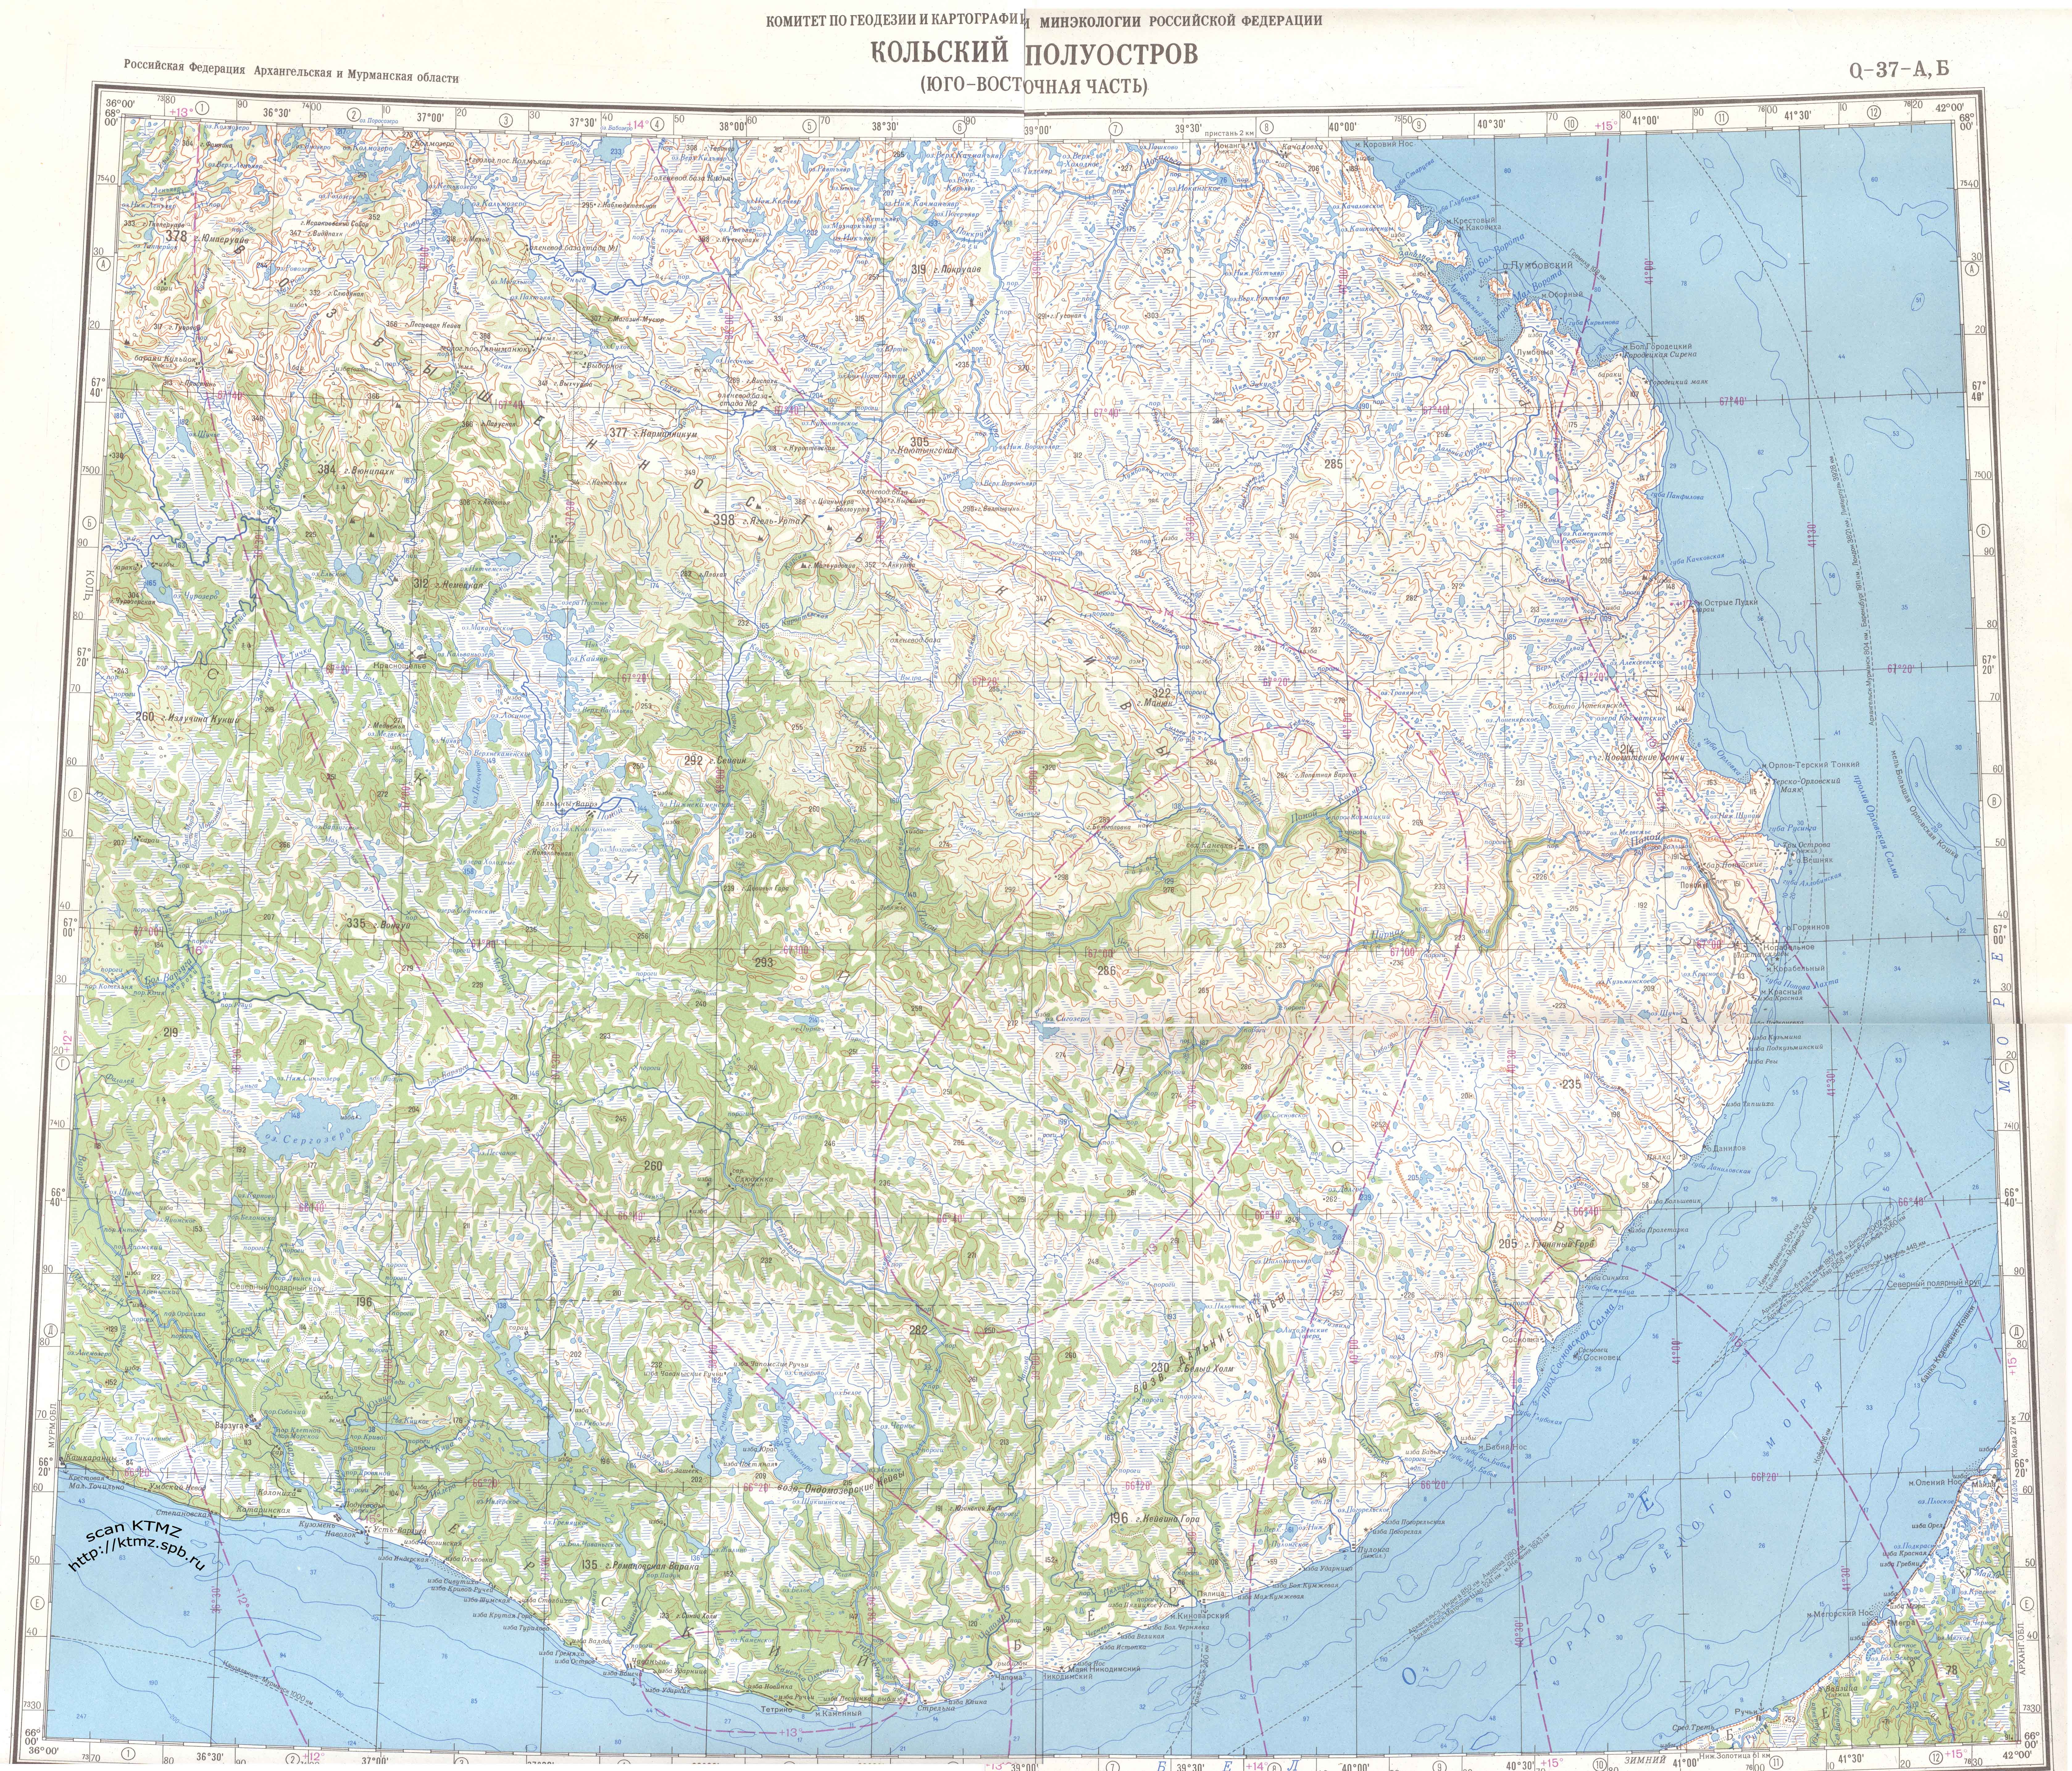 Юго-восток Кольского полуострова: Поной, Варзуга, Краснощелье. Обзорная карта.